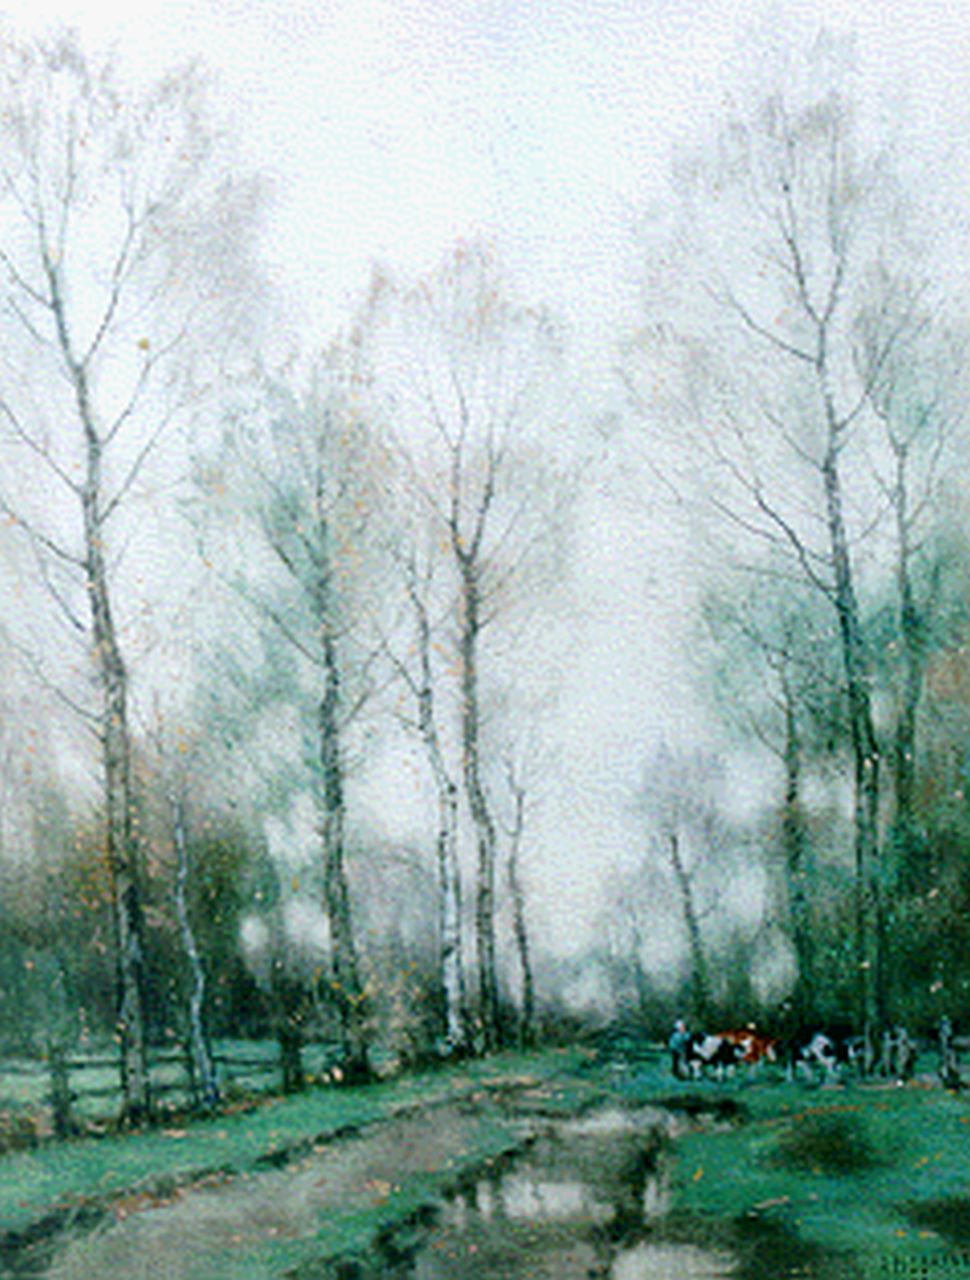 Gorter A.M.  | 'Arnold' Marc Gorter, A landscape,Twente, Aquarell auf Papier 55,0 x 42,0 cm, signed l.r.